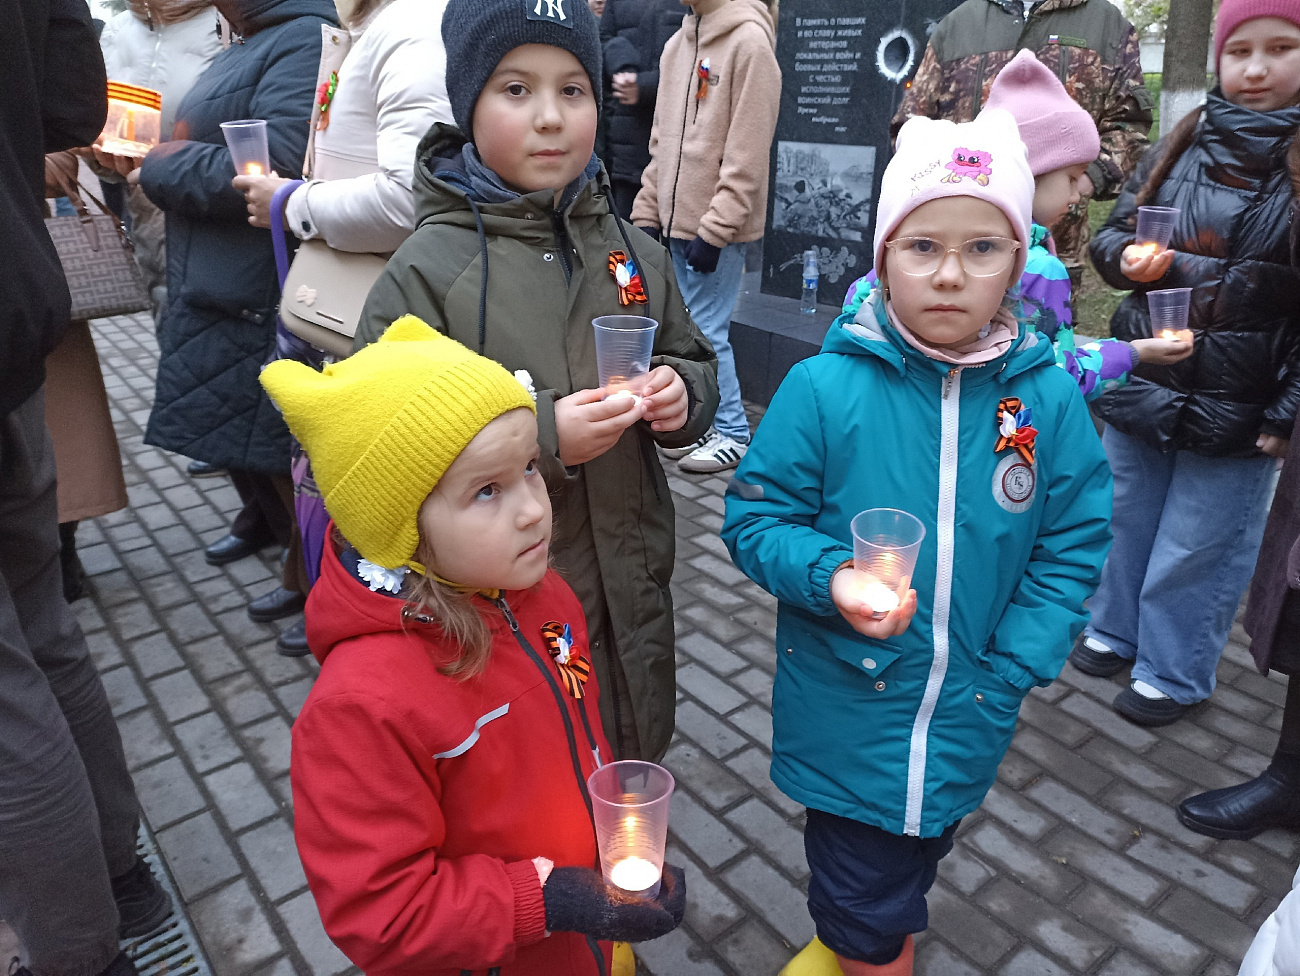 ДК Цивильск | Акция "Свеча памяти" в г. Цивильск